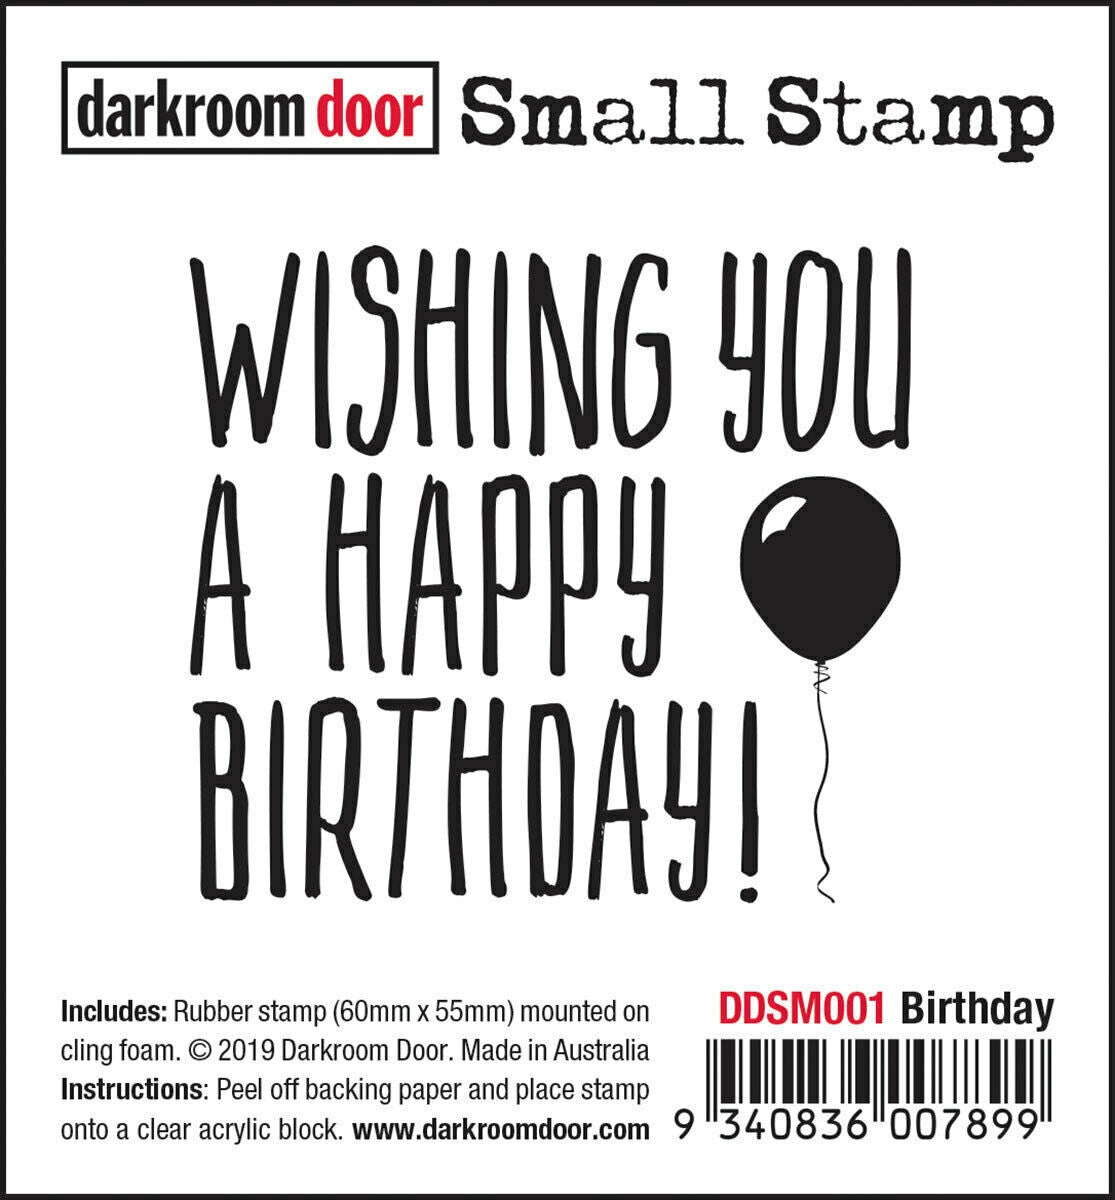 Darkroom Door Small Stamp Birthday Rubber 55mm x 60mm